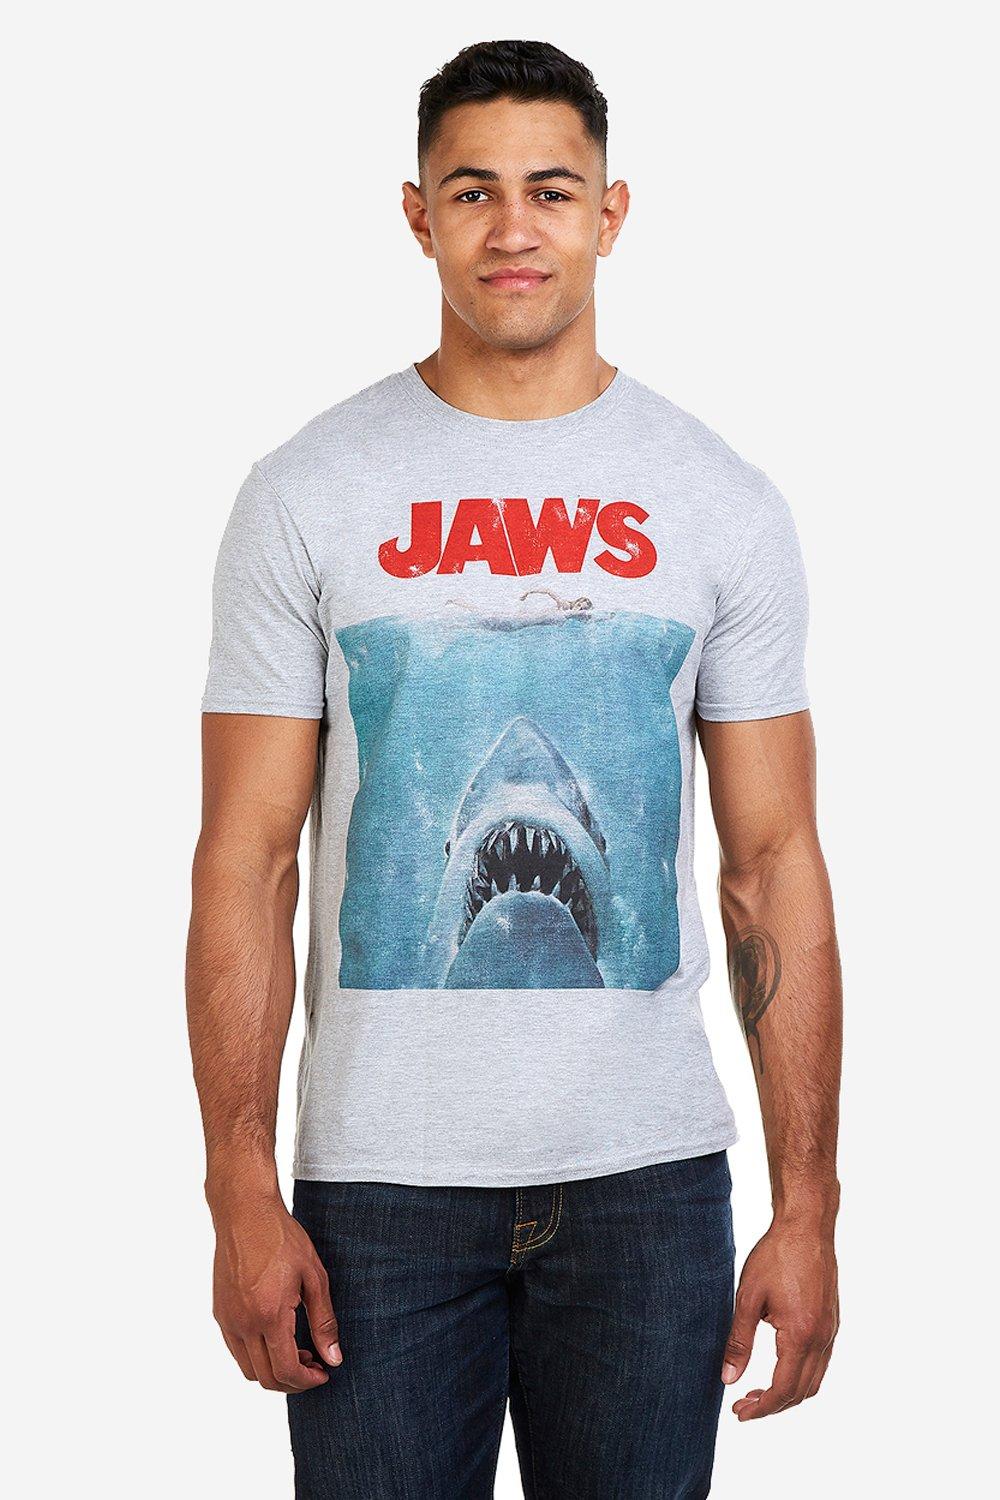 челюсти ремастированный 1975 blu ray диск триллер ужасы приключения стивена спилберга 16 nd play Футболка с постером фильма Jaws, серый